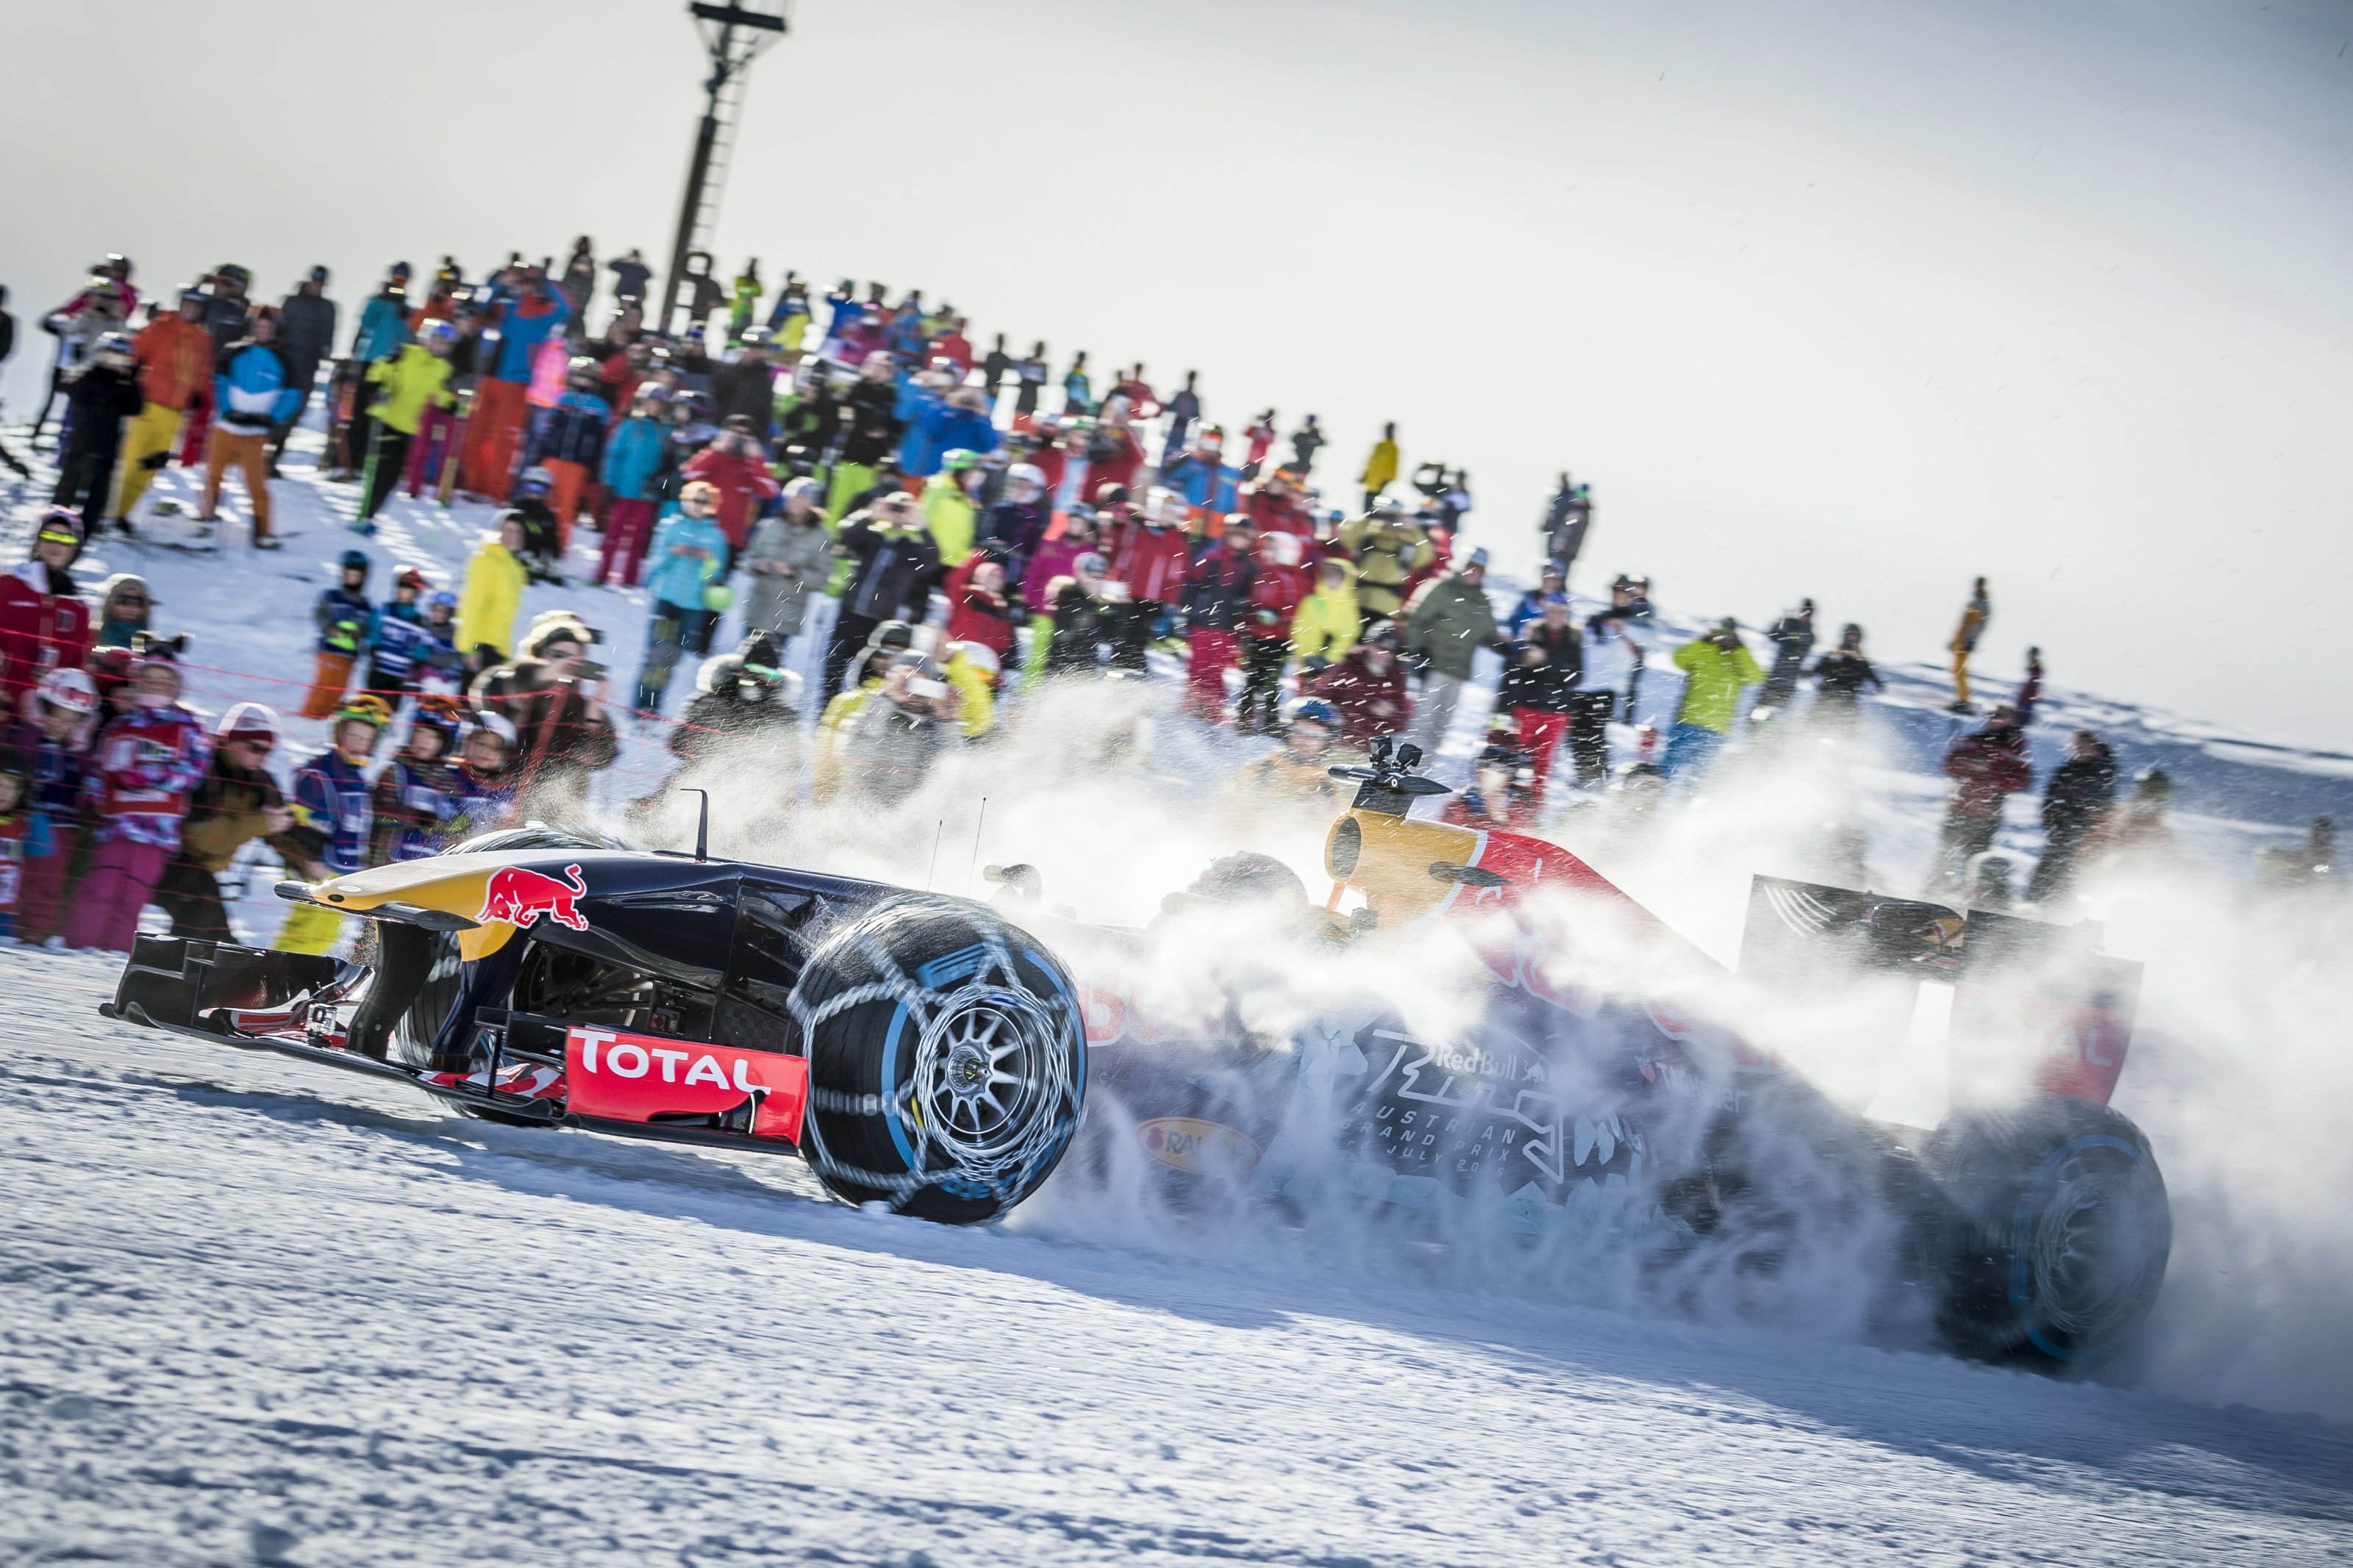 Video Mobil Formula 1 Beraksi Di Atas Salju